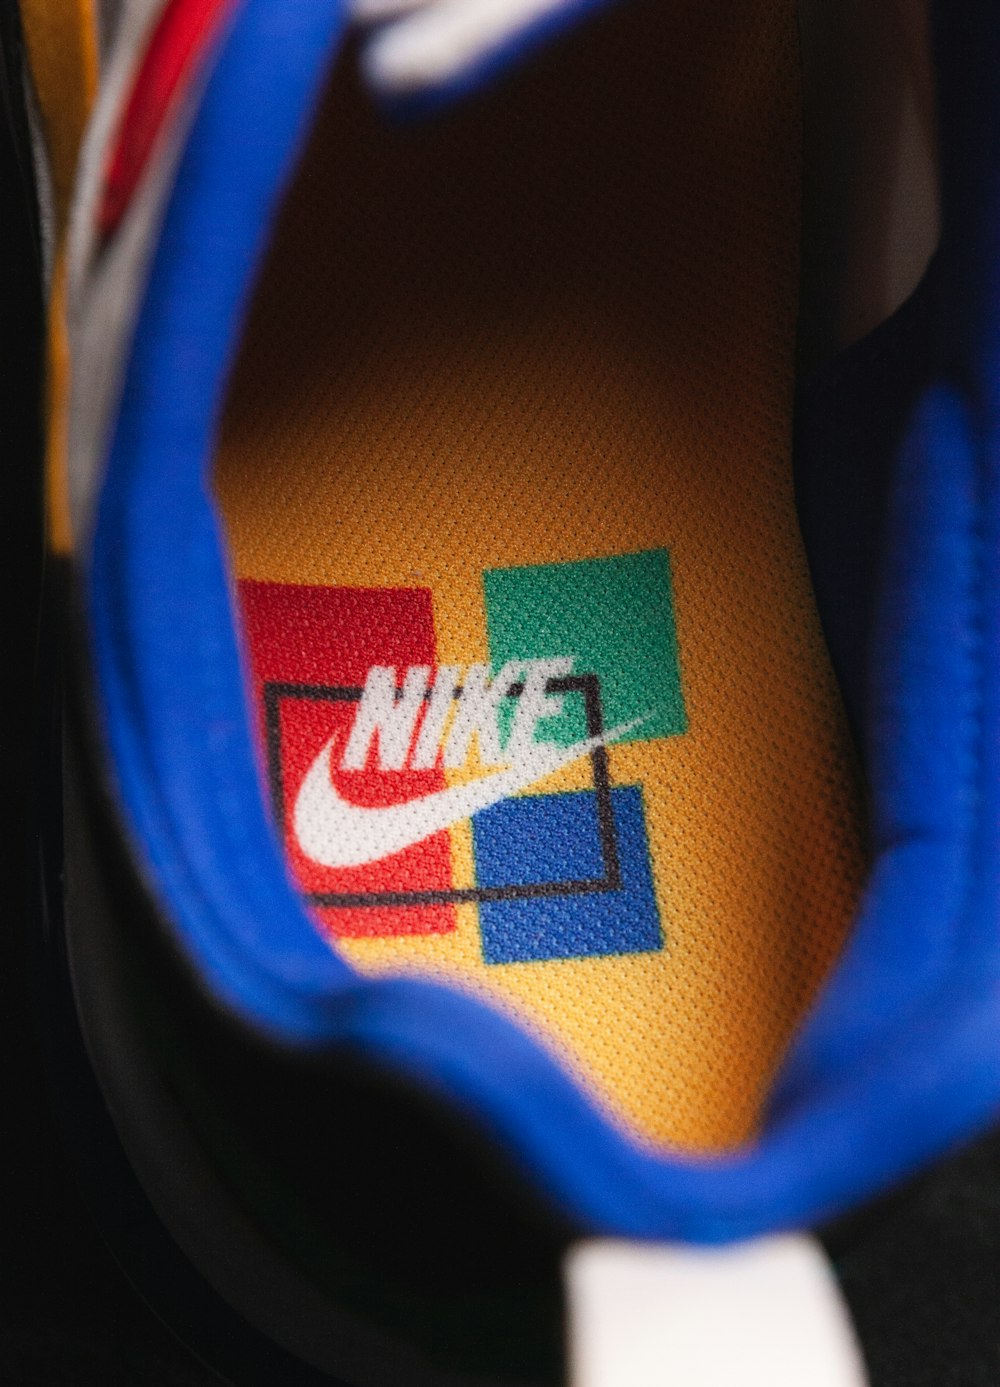 Gros plan du logo Nike sur une chaussure